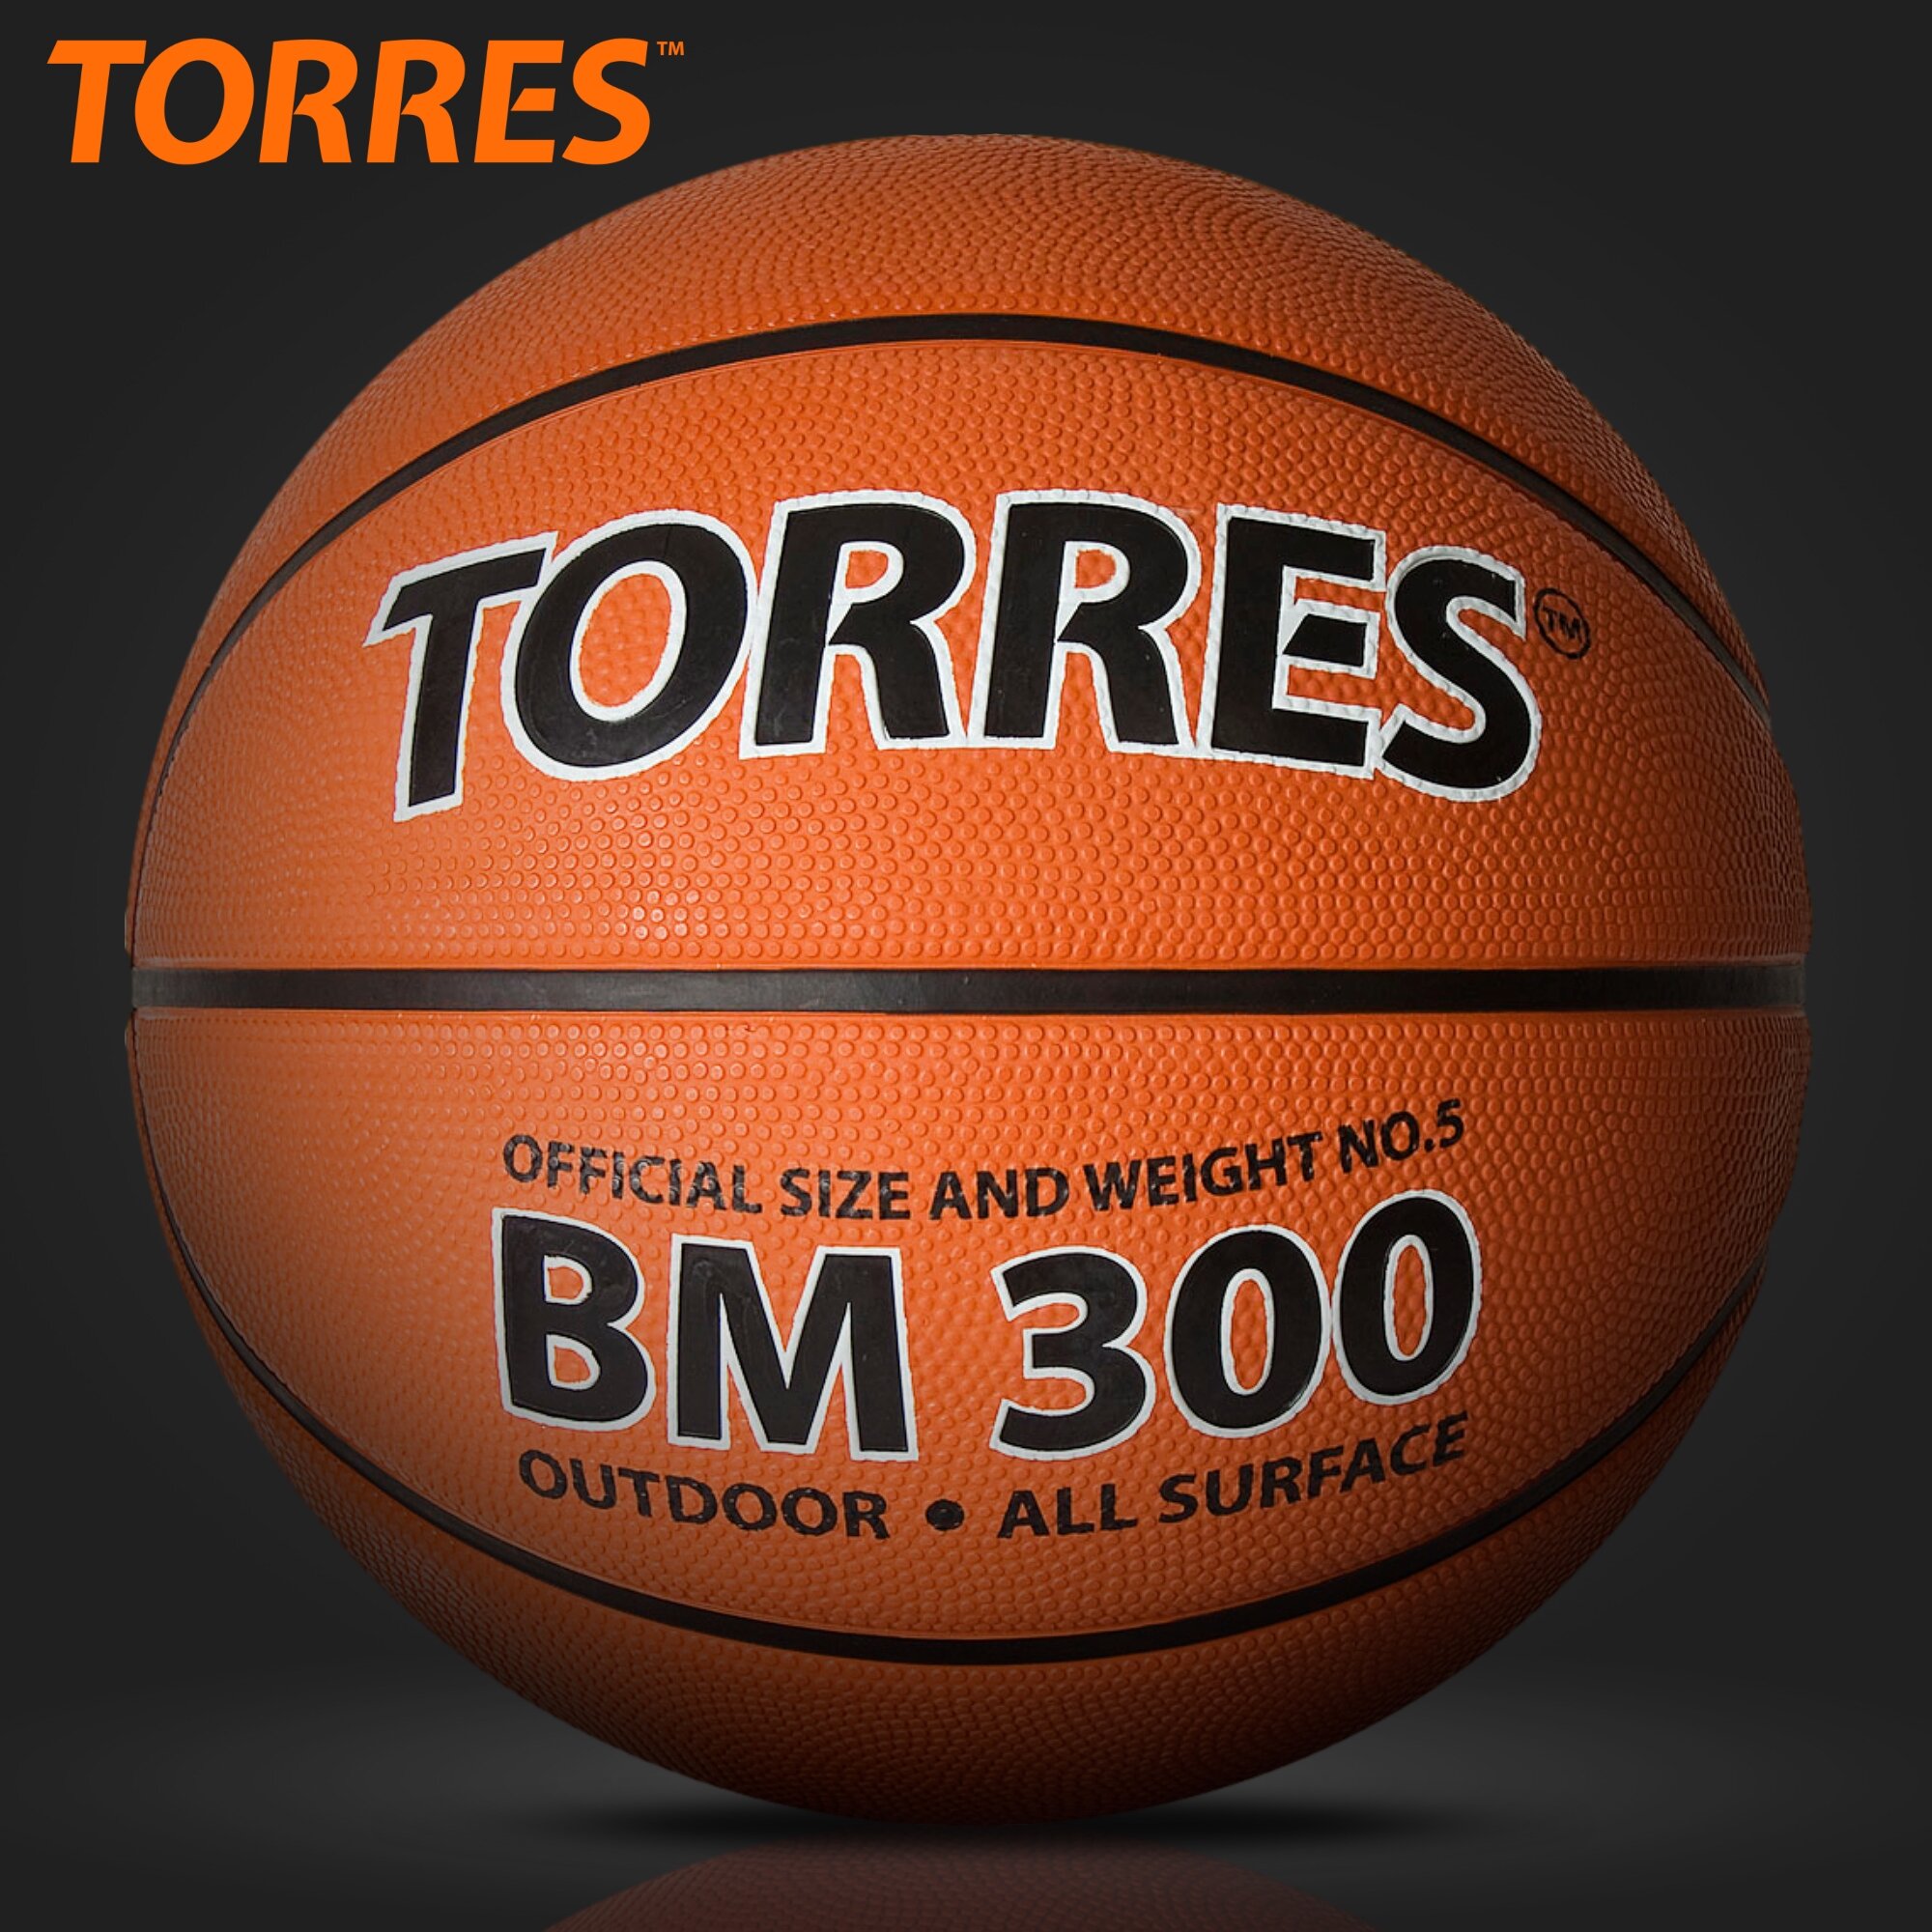 Мяч баскетбольный TORRES BM300 B02015, размер 5